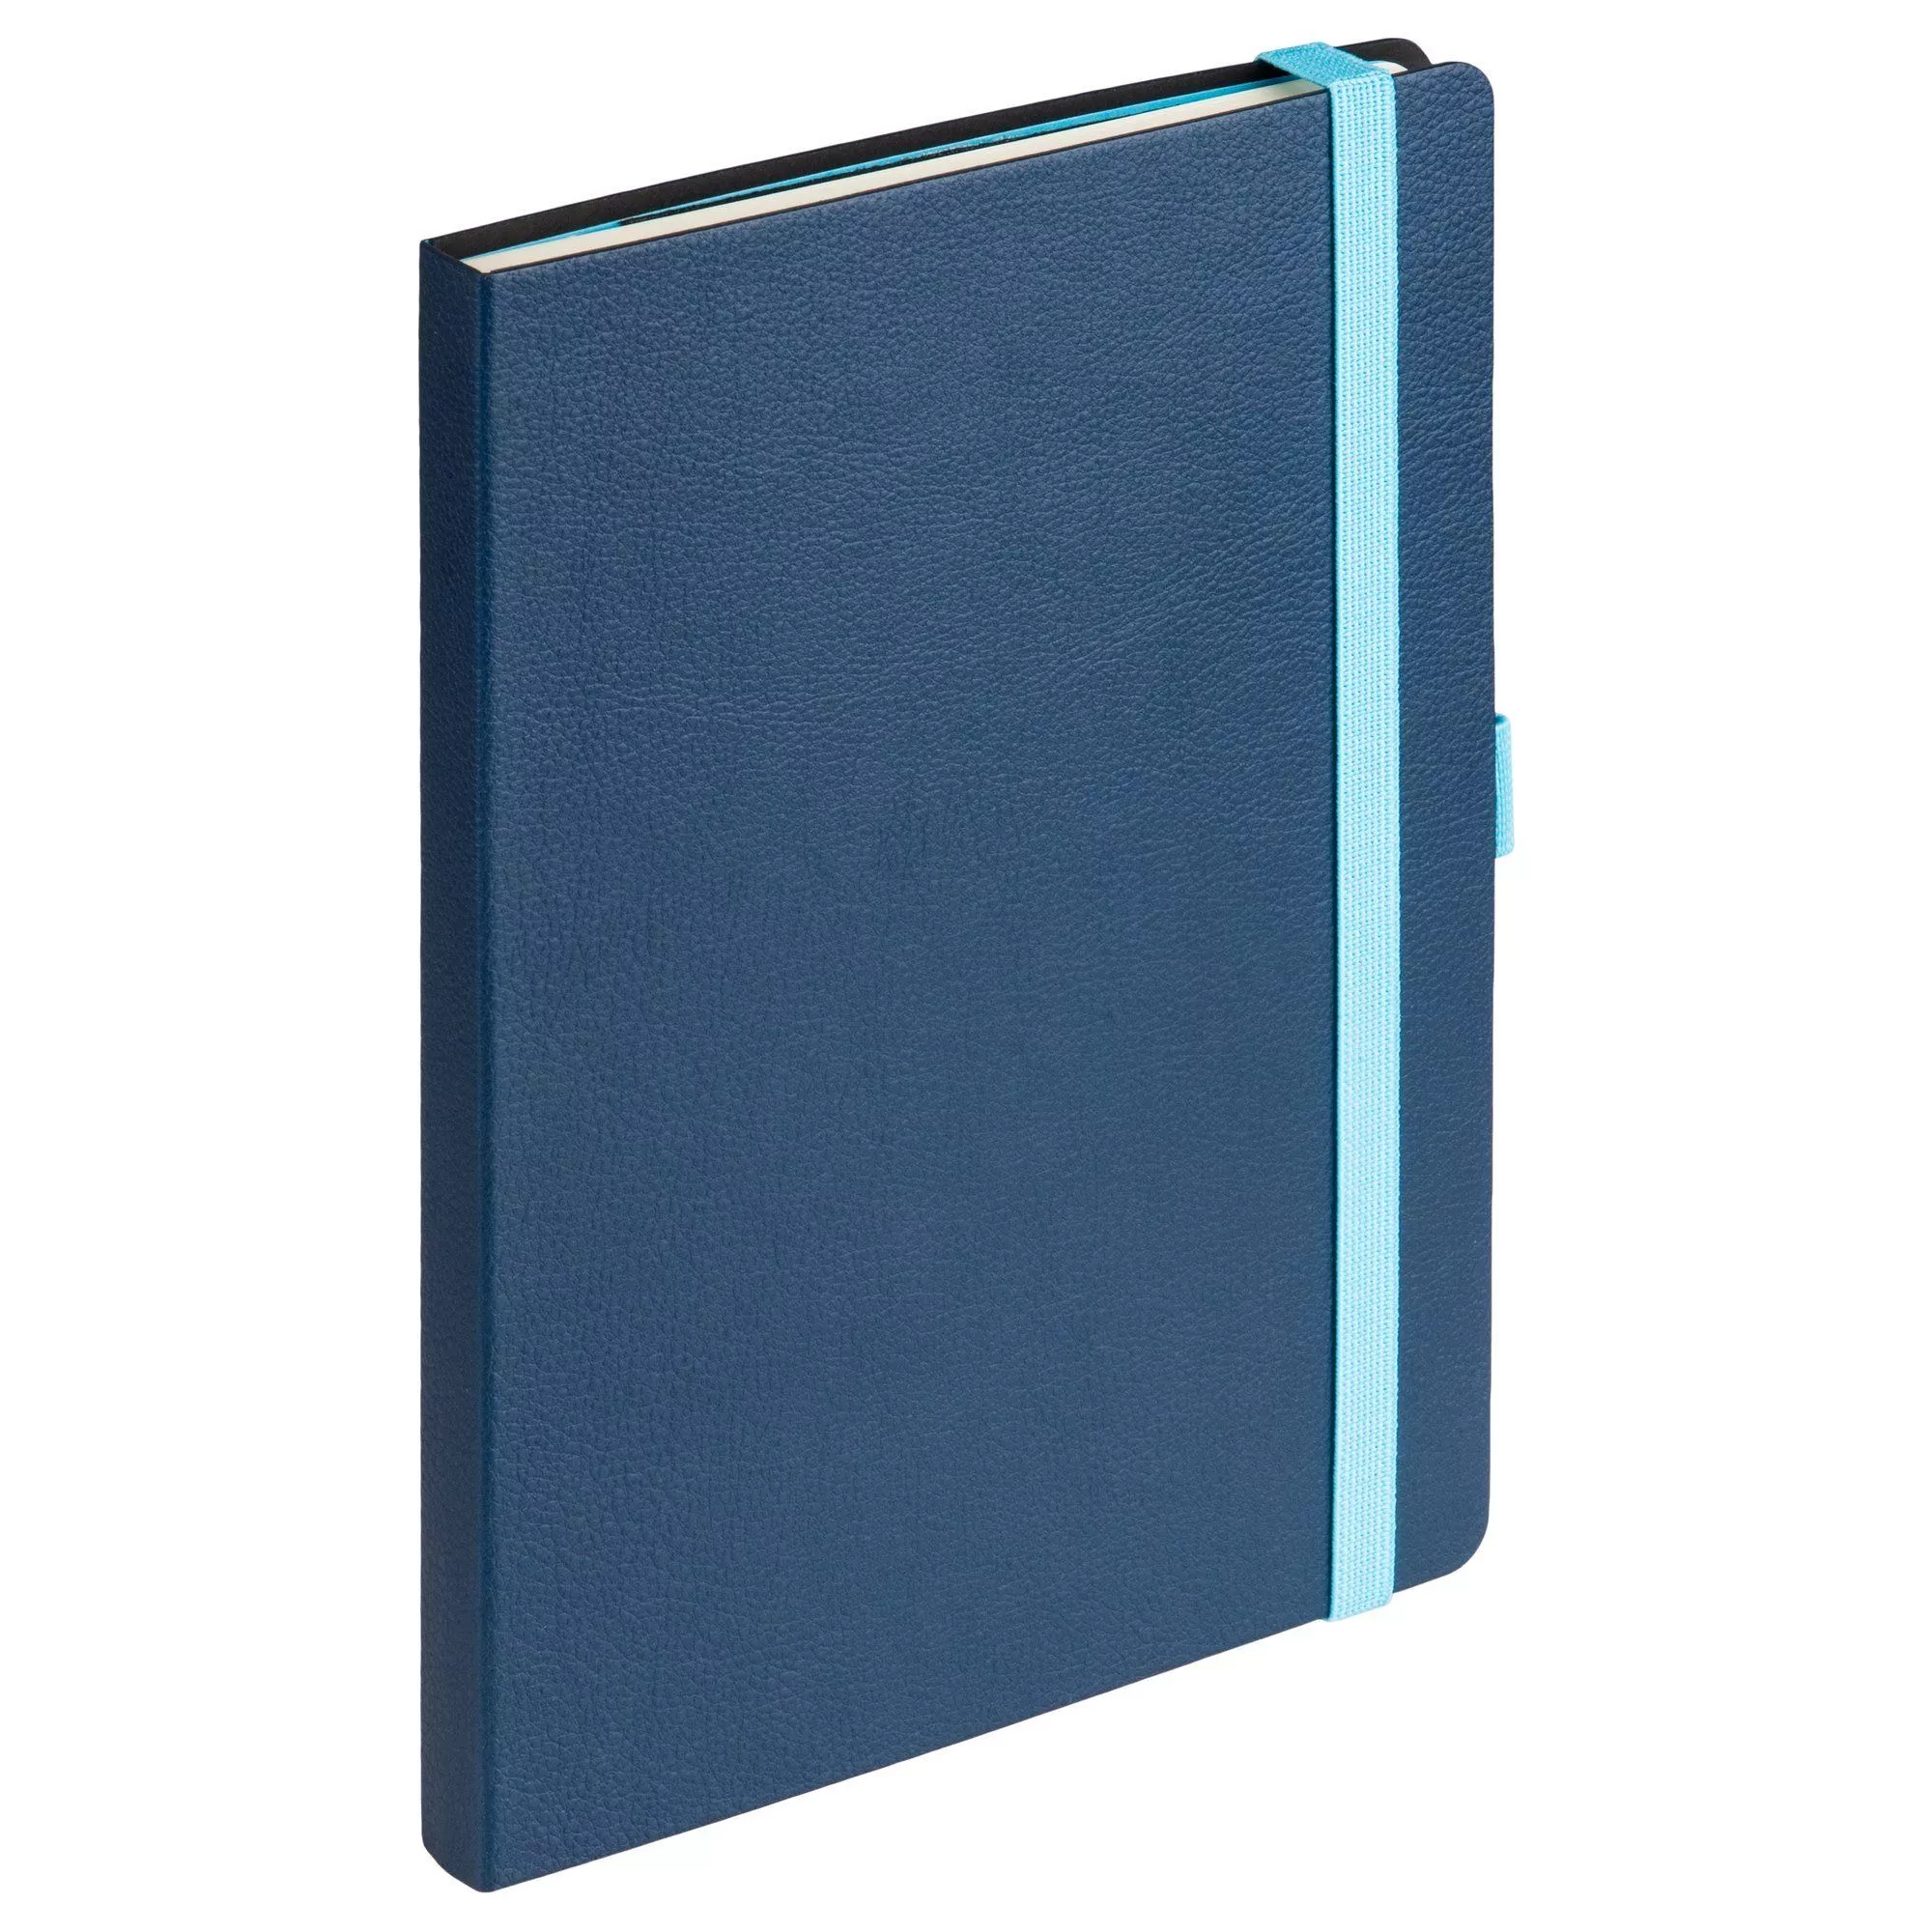 Ежедневник недатированный, Portobello Trend, Chameleon , жесткая обложка, 145х210, 256 стр, синий/голубой